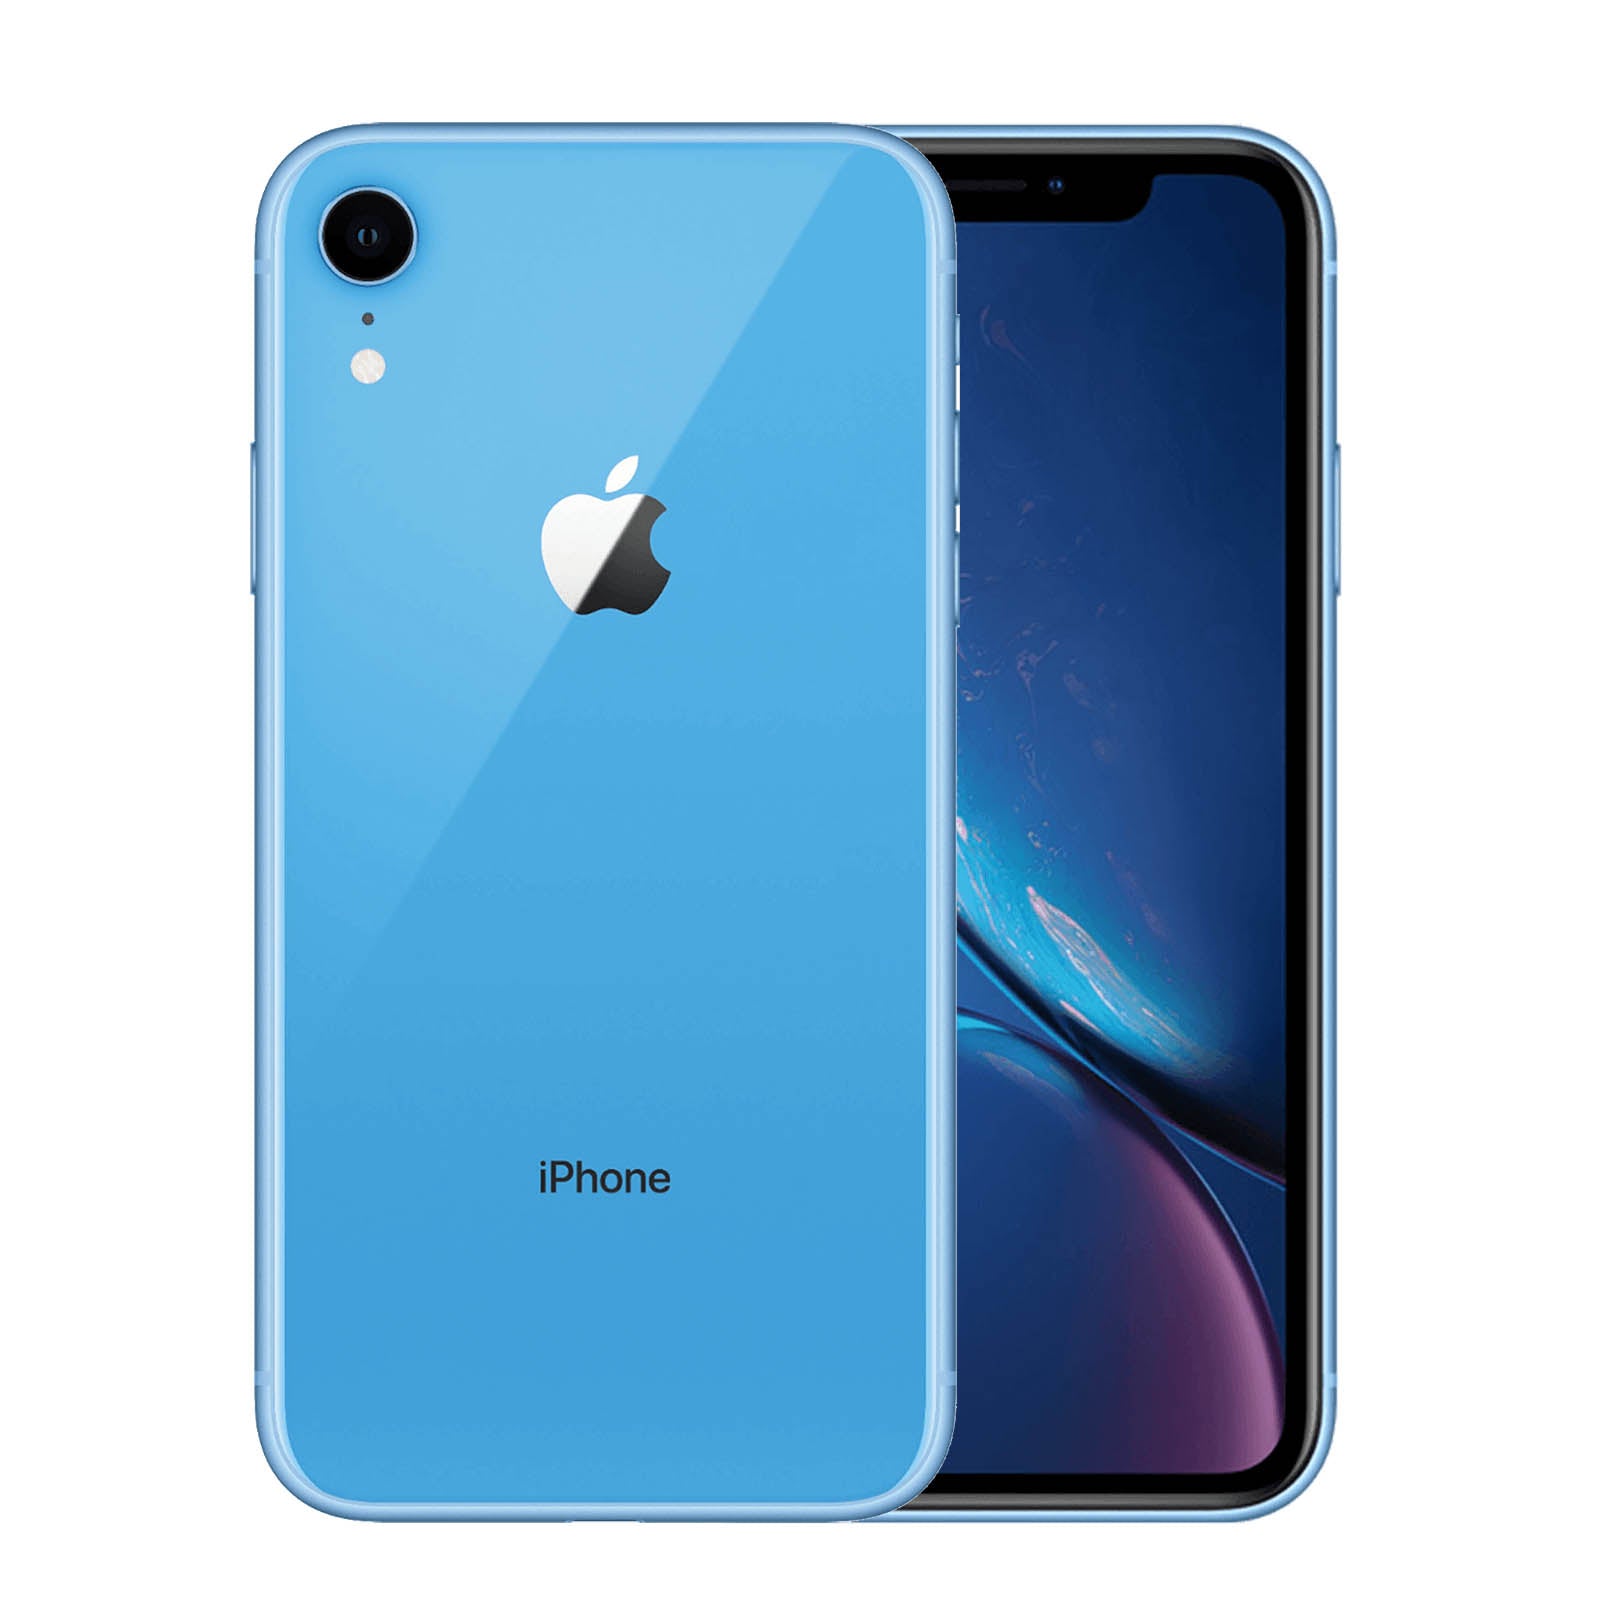 Apple iPhone XR 128GB - Blue – Loop Mobile - AU